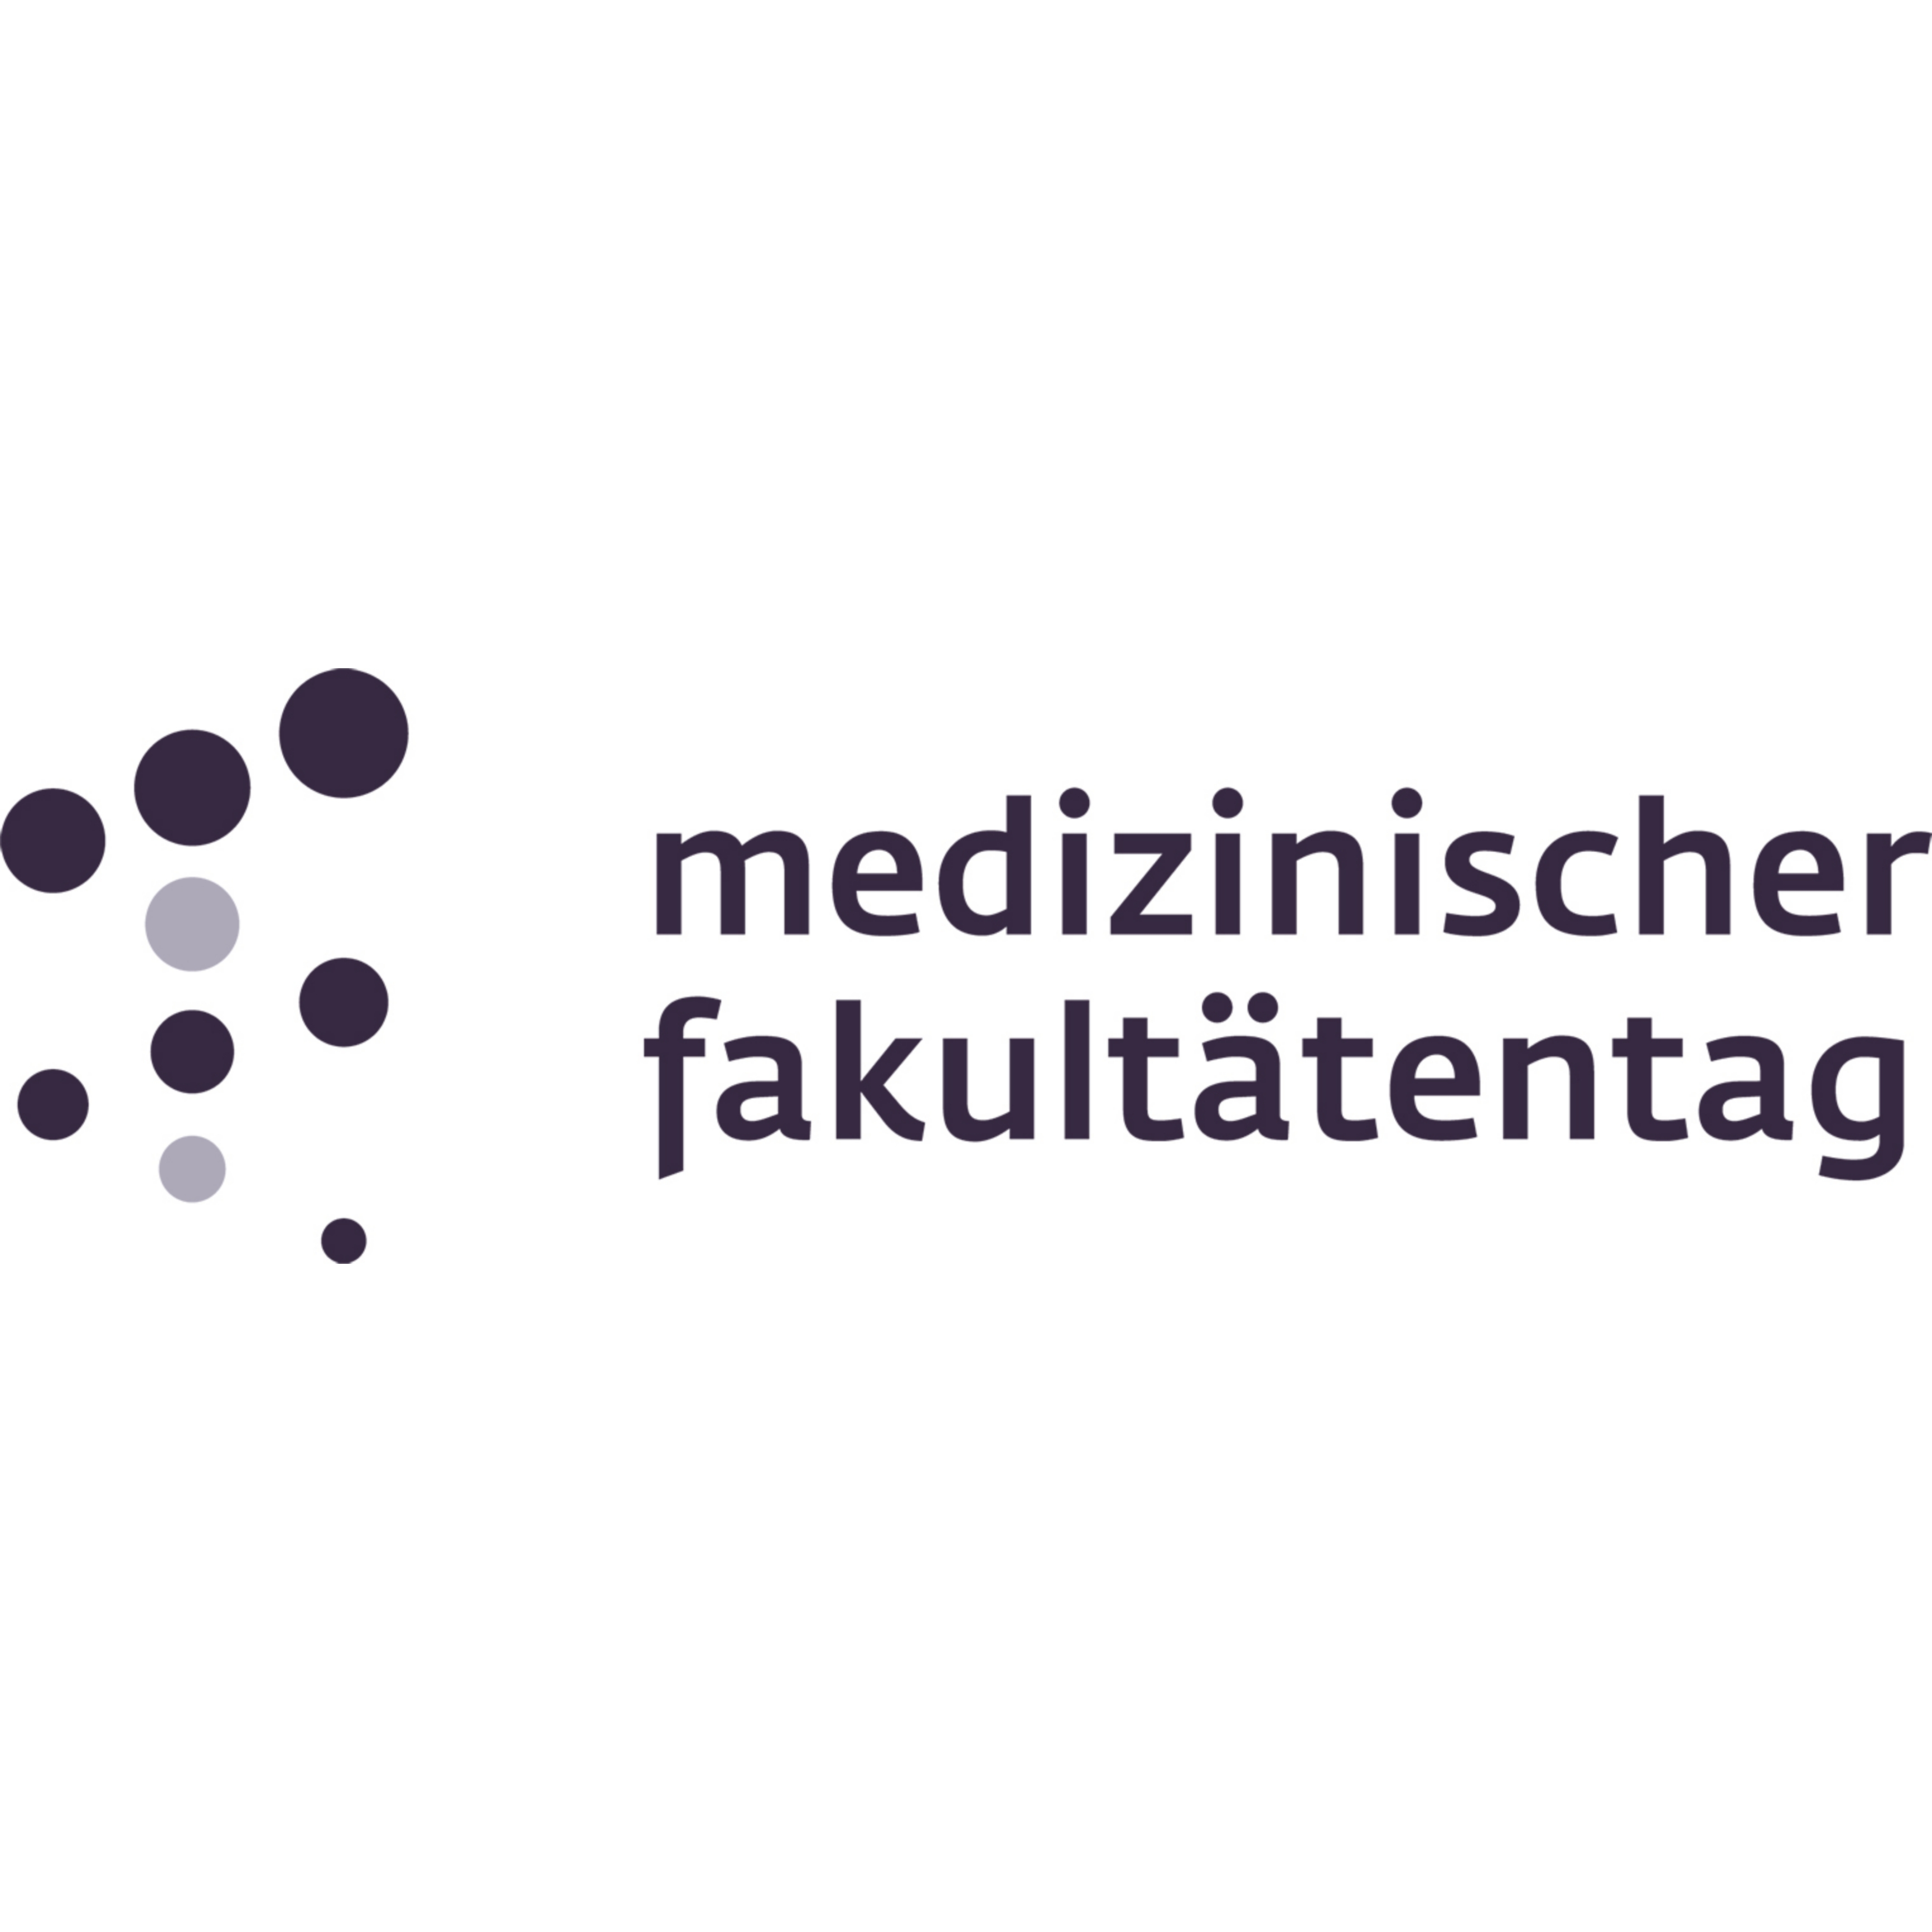 Zu sehen ist das Logo des Medizinischen Fakulttentags. Es handelt sich um eine Wort-Bild-Marke.